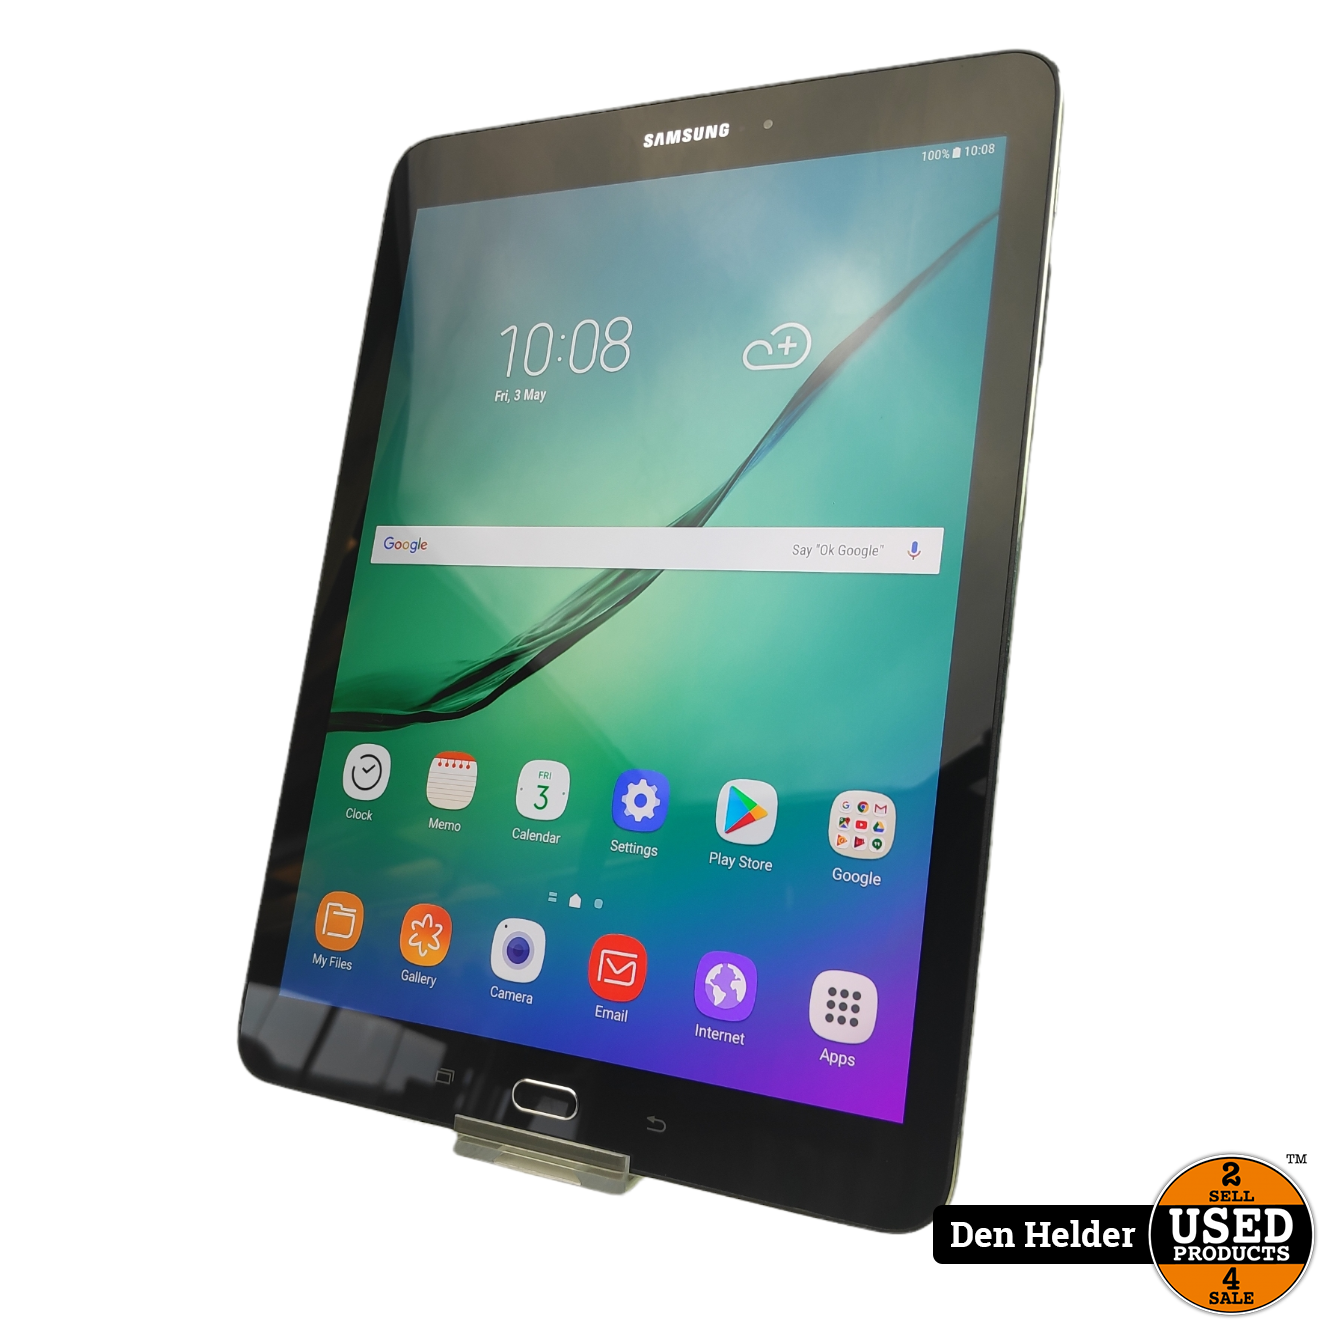 Donau Bezienswaardigheden bekijken Amerika Samsung Galaxy Tab S2 32GB Zwart - In Goede Staat! - Used Products Den  Helder